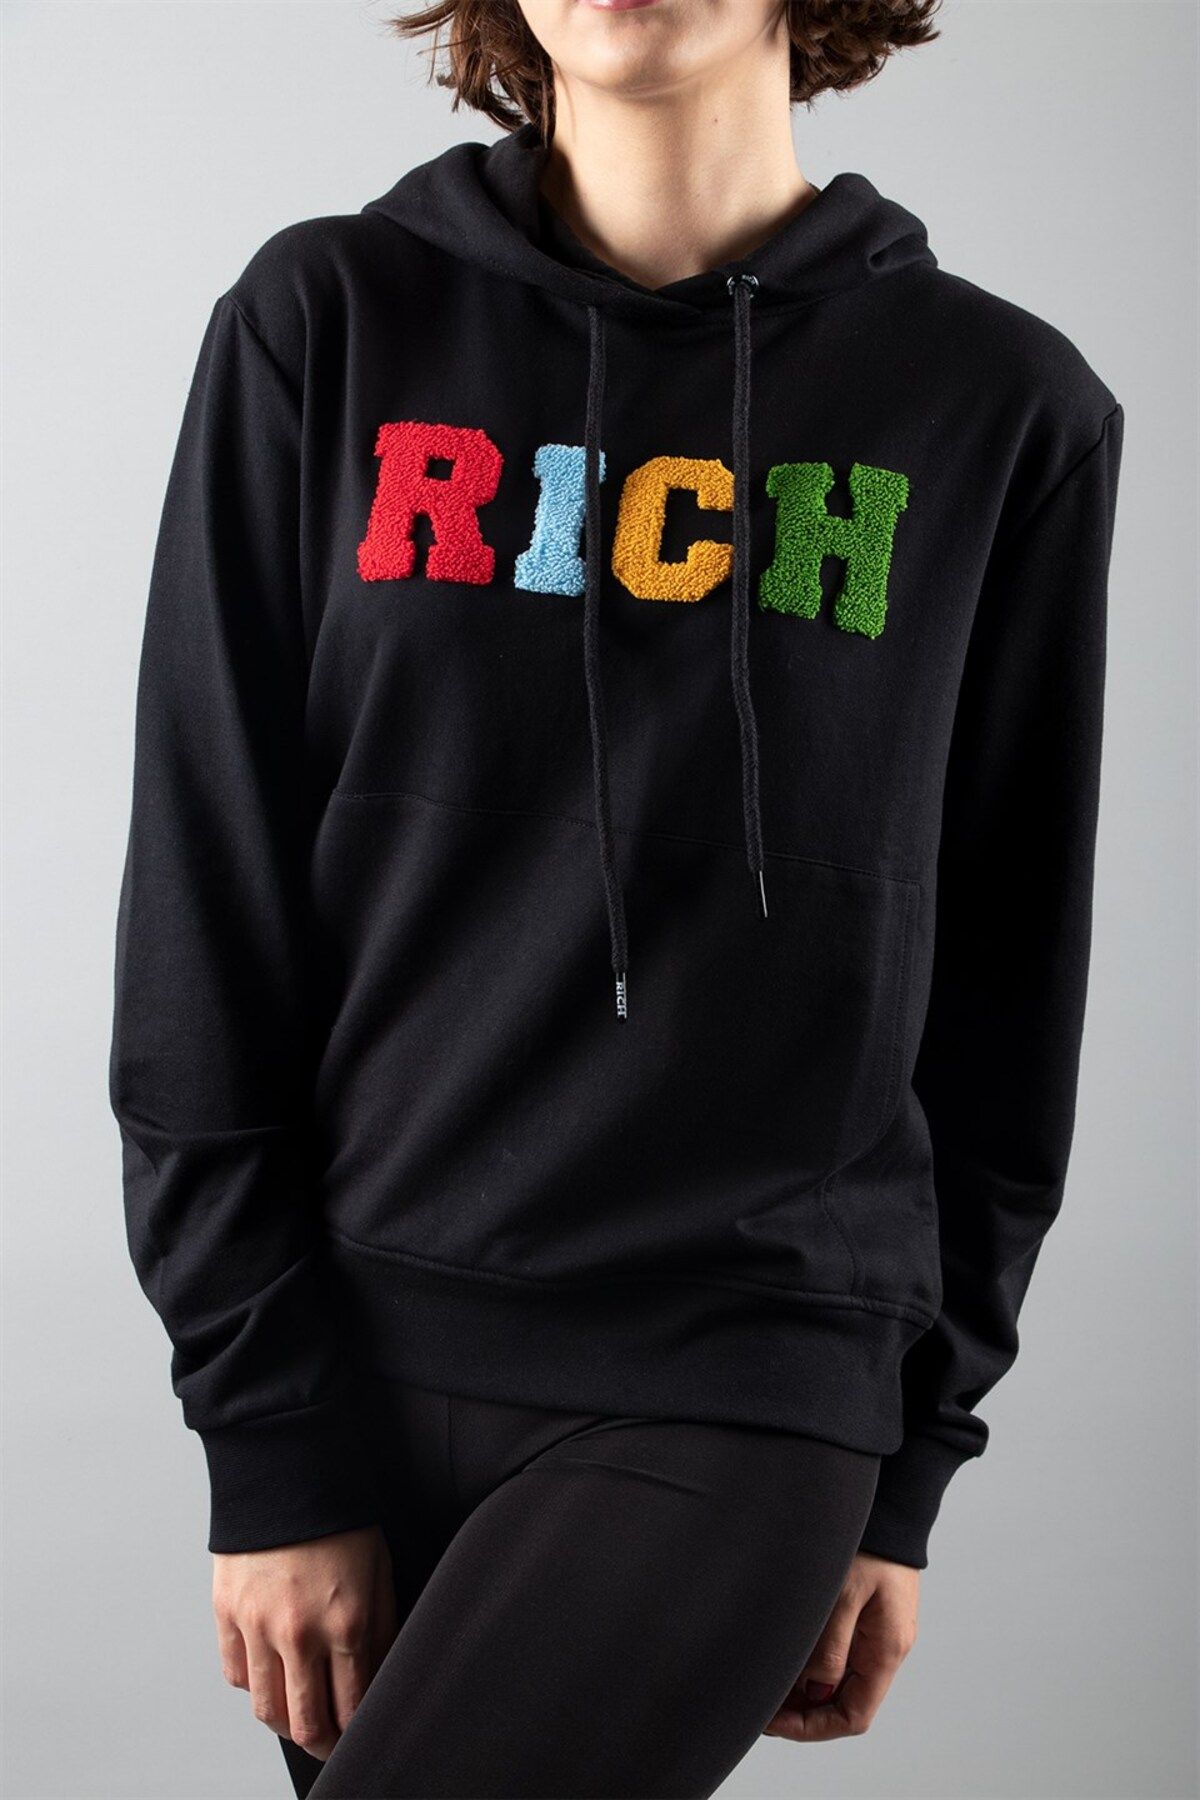 Rich Siyah 2 Iplik Kapüşonlu Sweatshirt